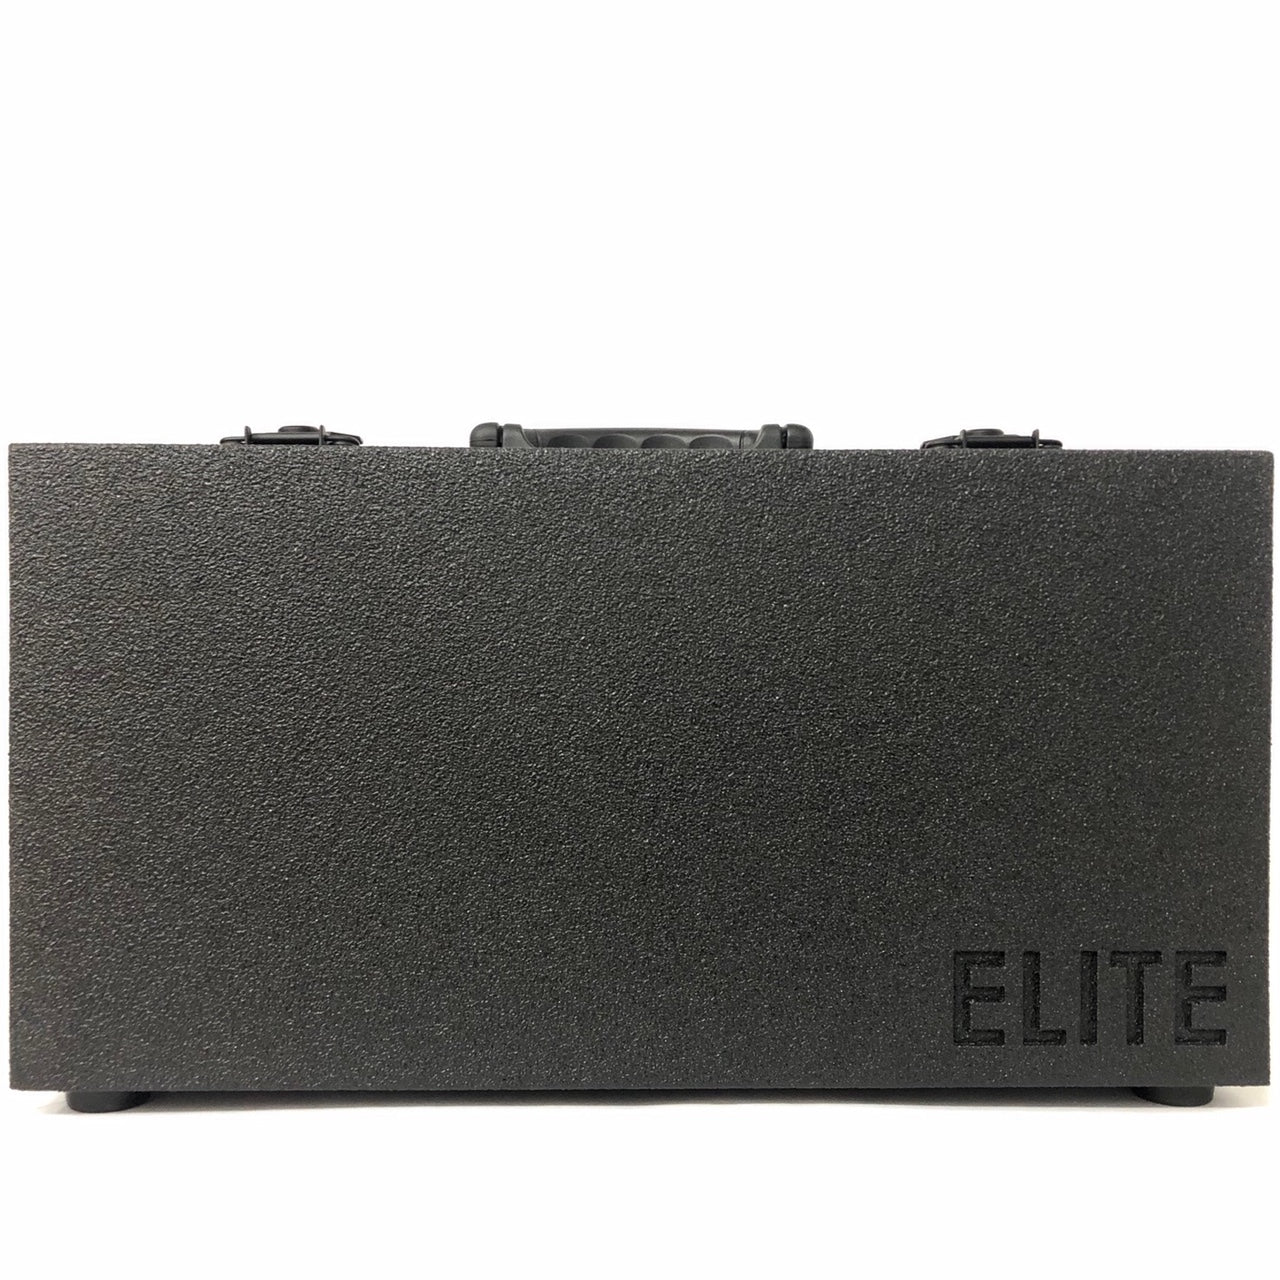 Elite Modular Cases E208 Portable 6U